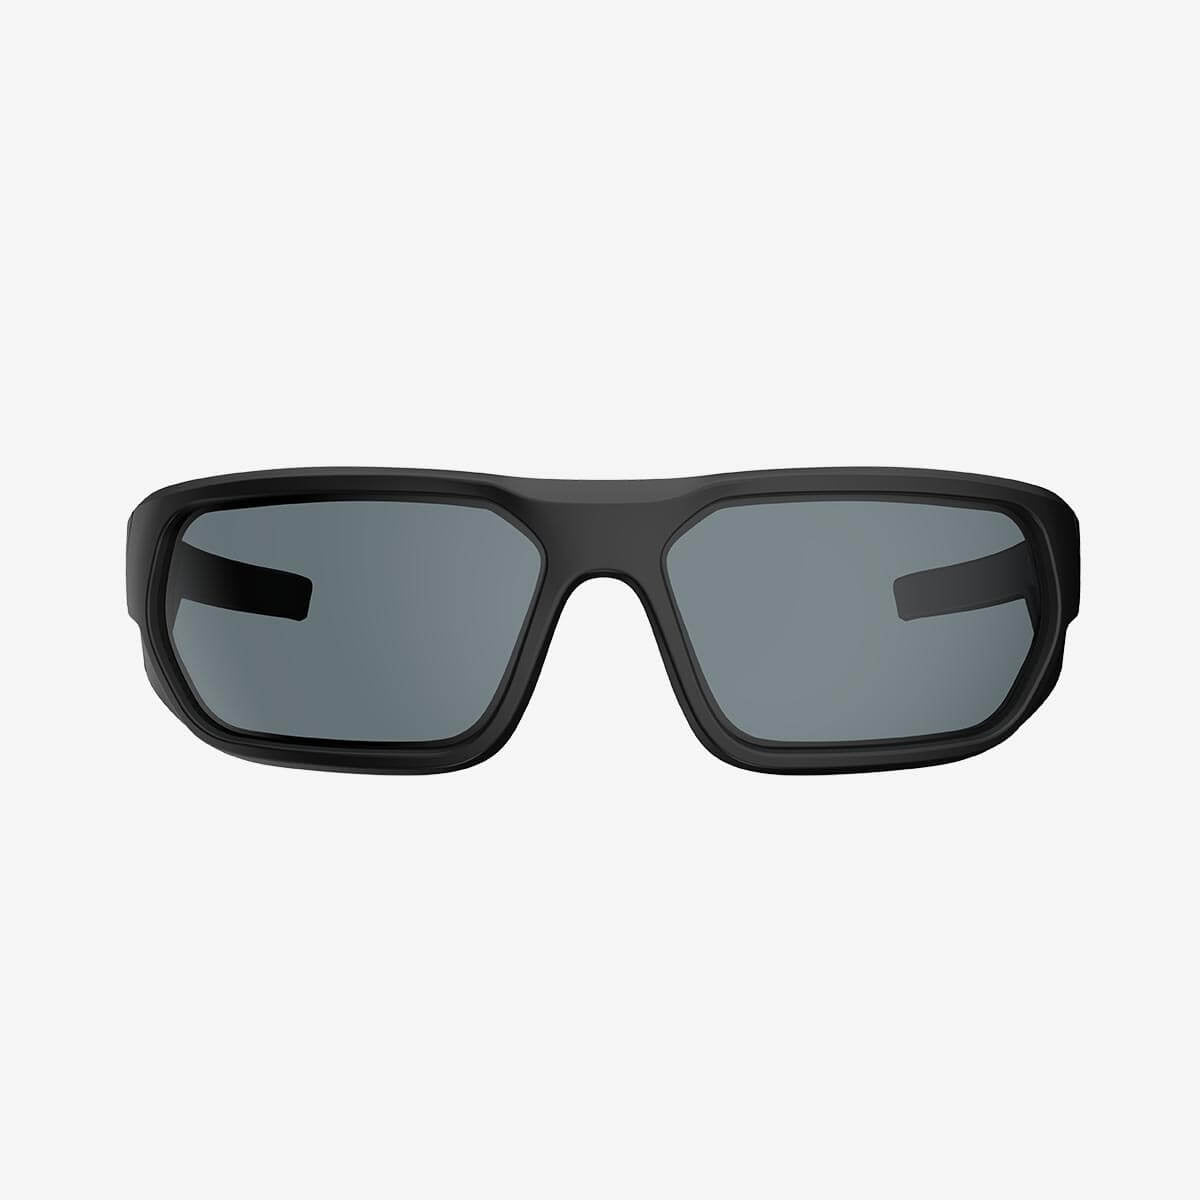 Magpul - Radius Eyewear - Black Frame, Gray Lens